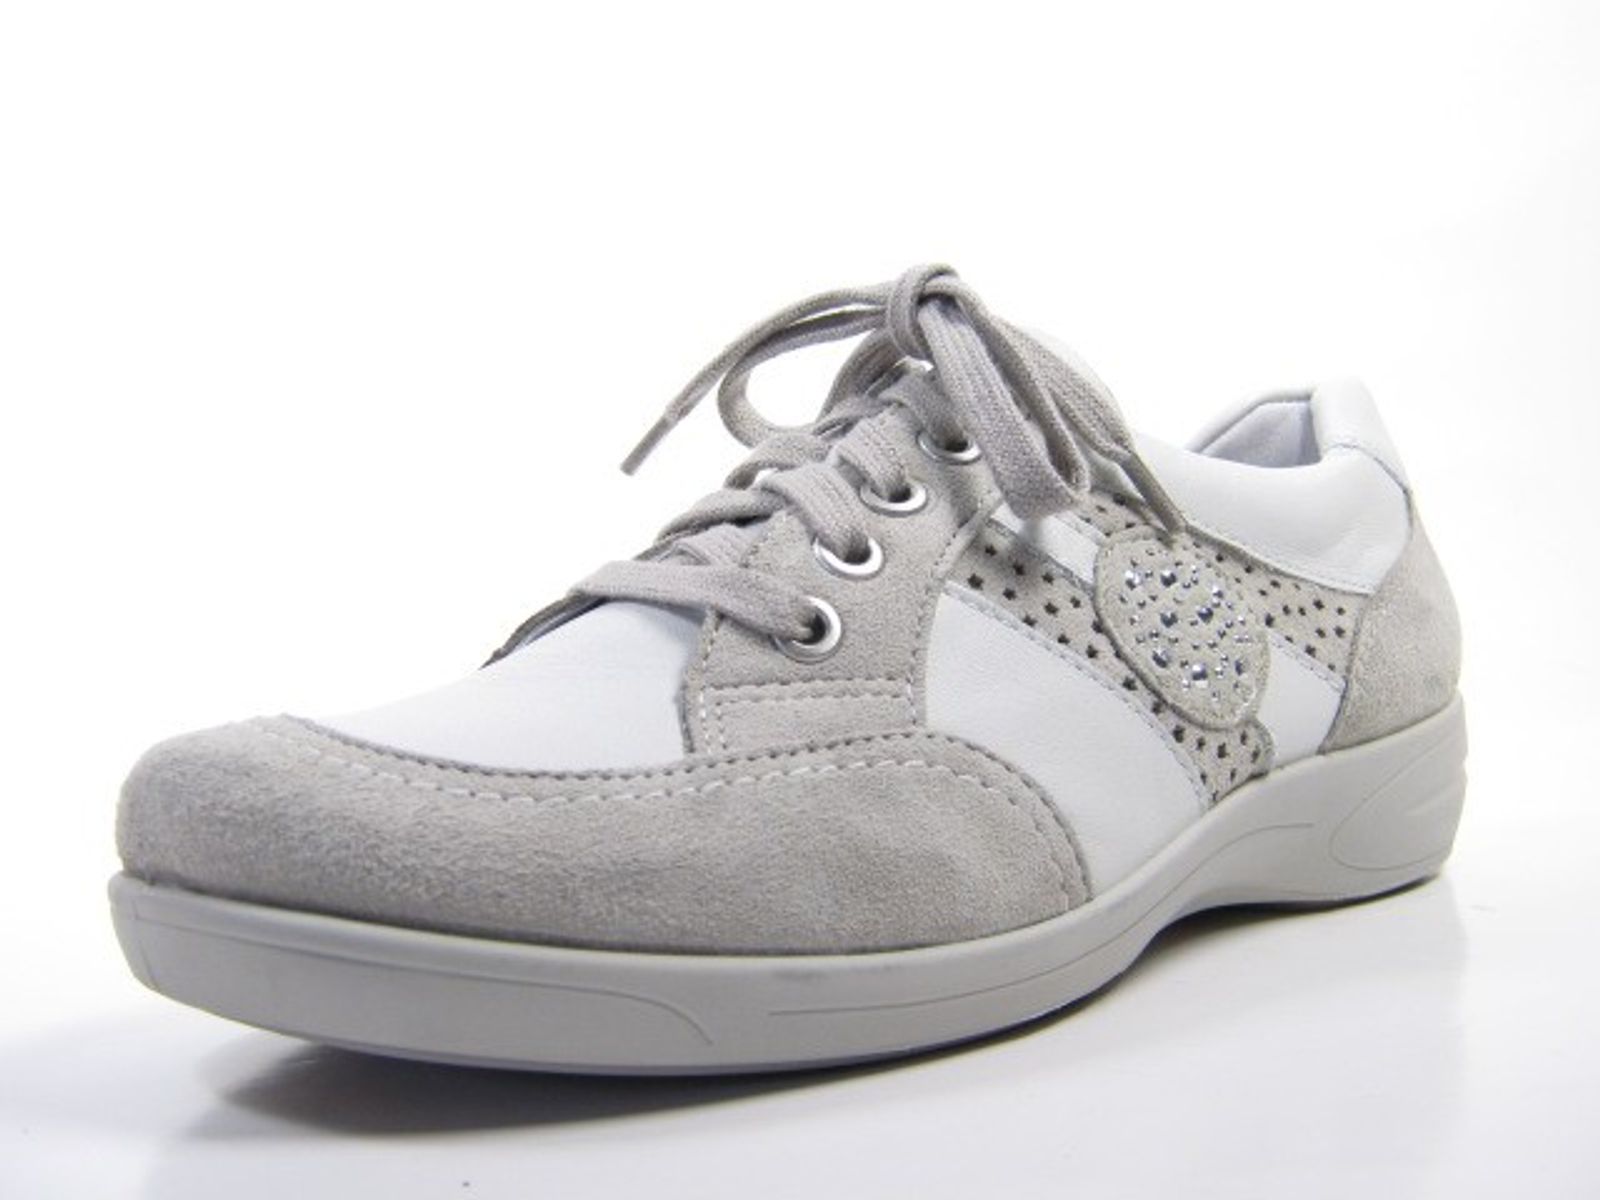 Schuh von ARA, 3½